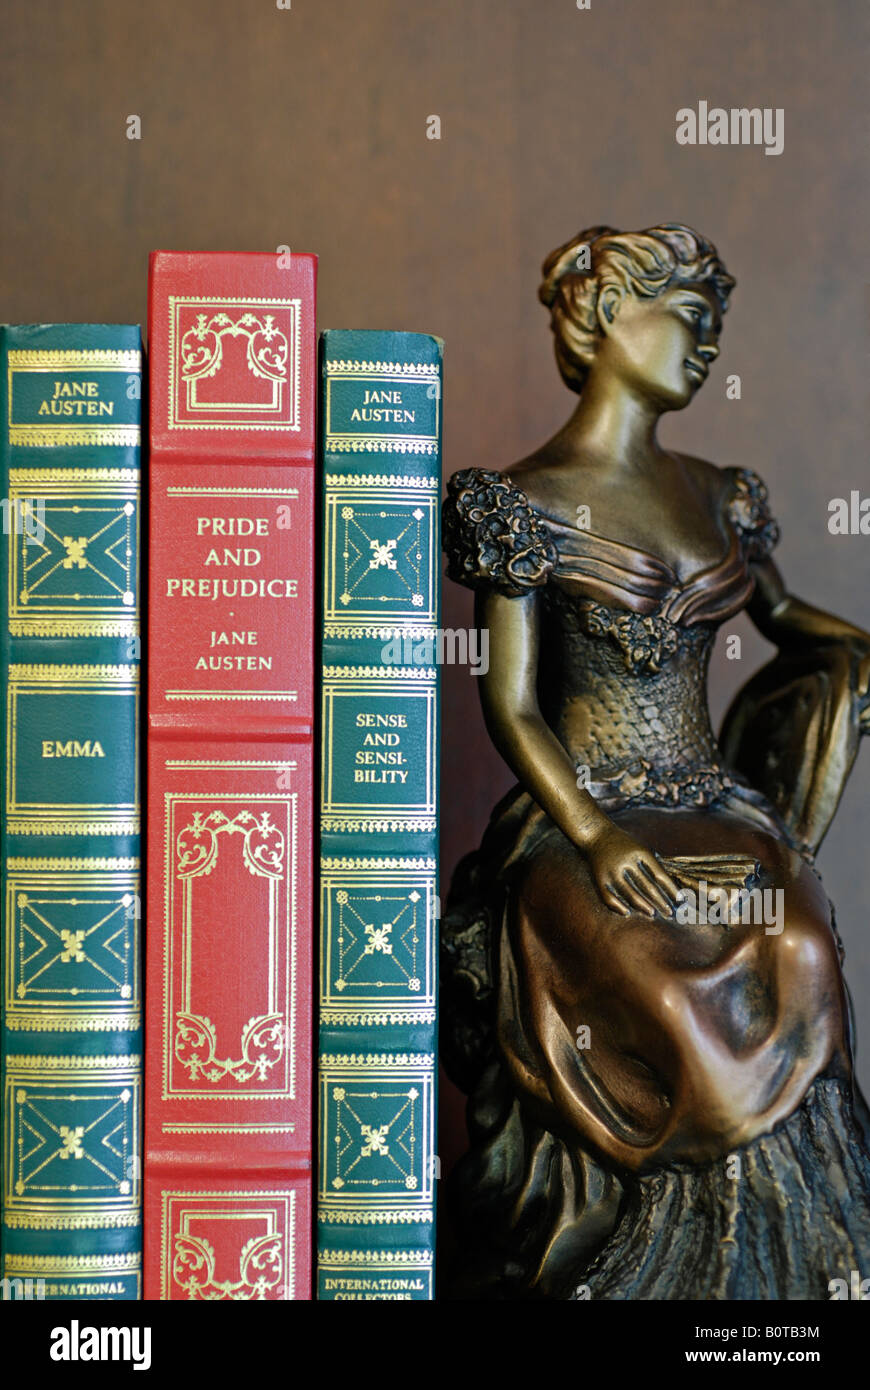 Libros encuadernados en cuero y el libro final, Jane Austen clásicos Foto de stock